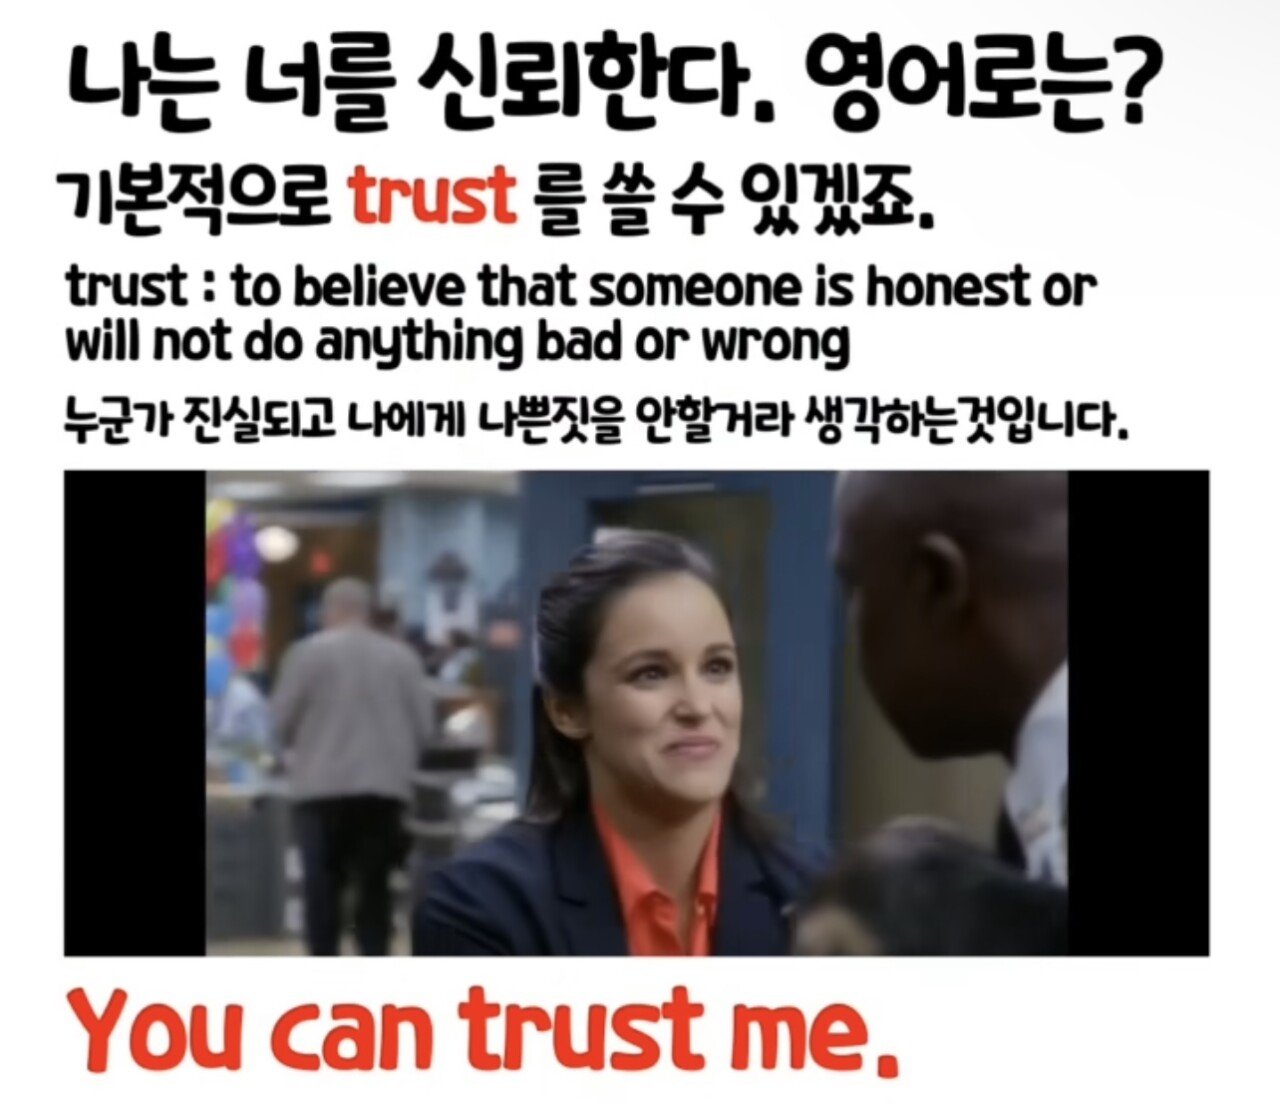 오늘도 한 걸음 더: “I am 신뢰에요“ 영어로?